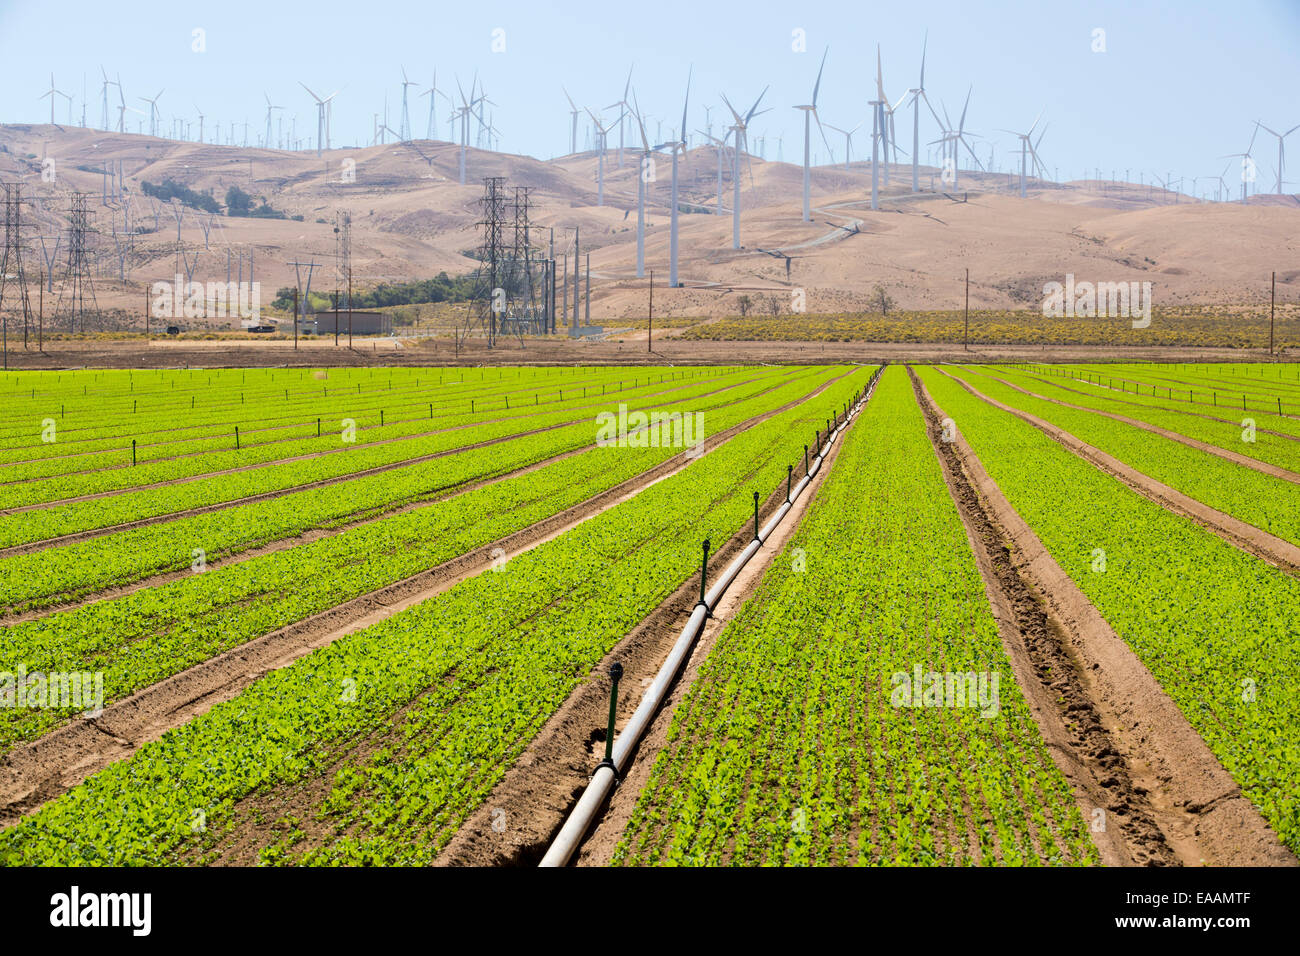 Colture irrigate al di sotto del Tehachapi Pass wind farm, il primo grande scala wind farm area sviluppata negli Stati Uniti, California Foto Stock